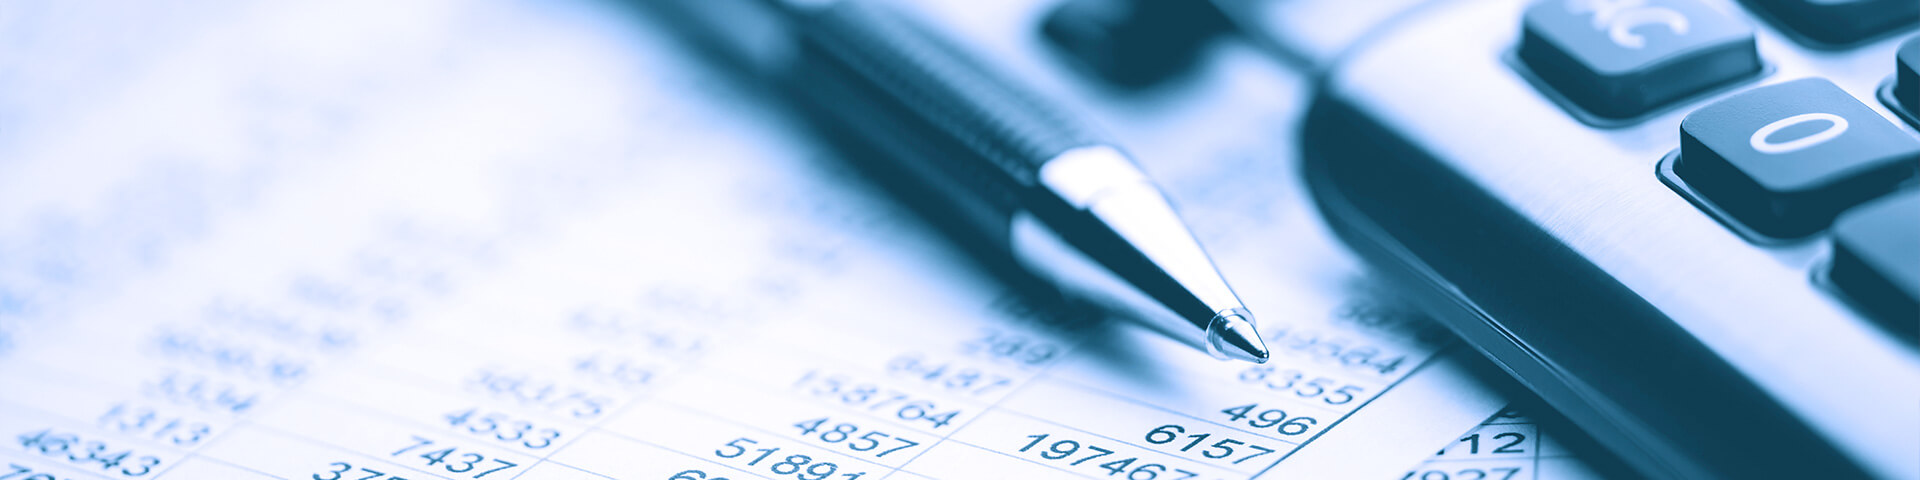 Finanzbuchhaltung, Lohnbuchhaltung: Taschenrechner, Kugelschreiber und Bilanzen